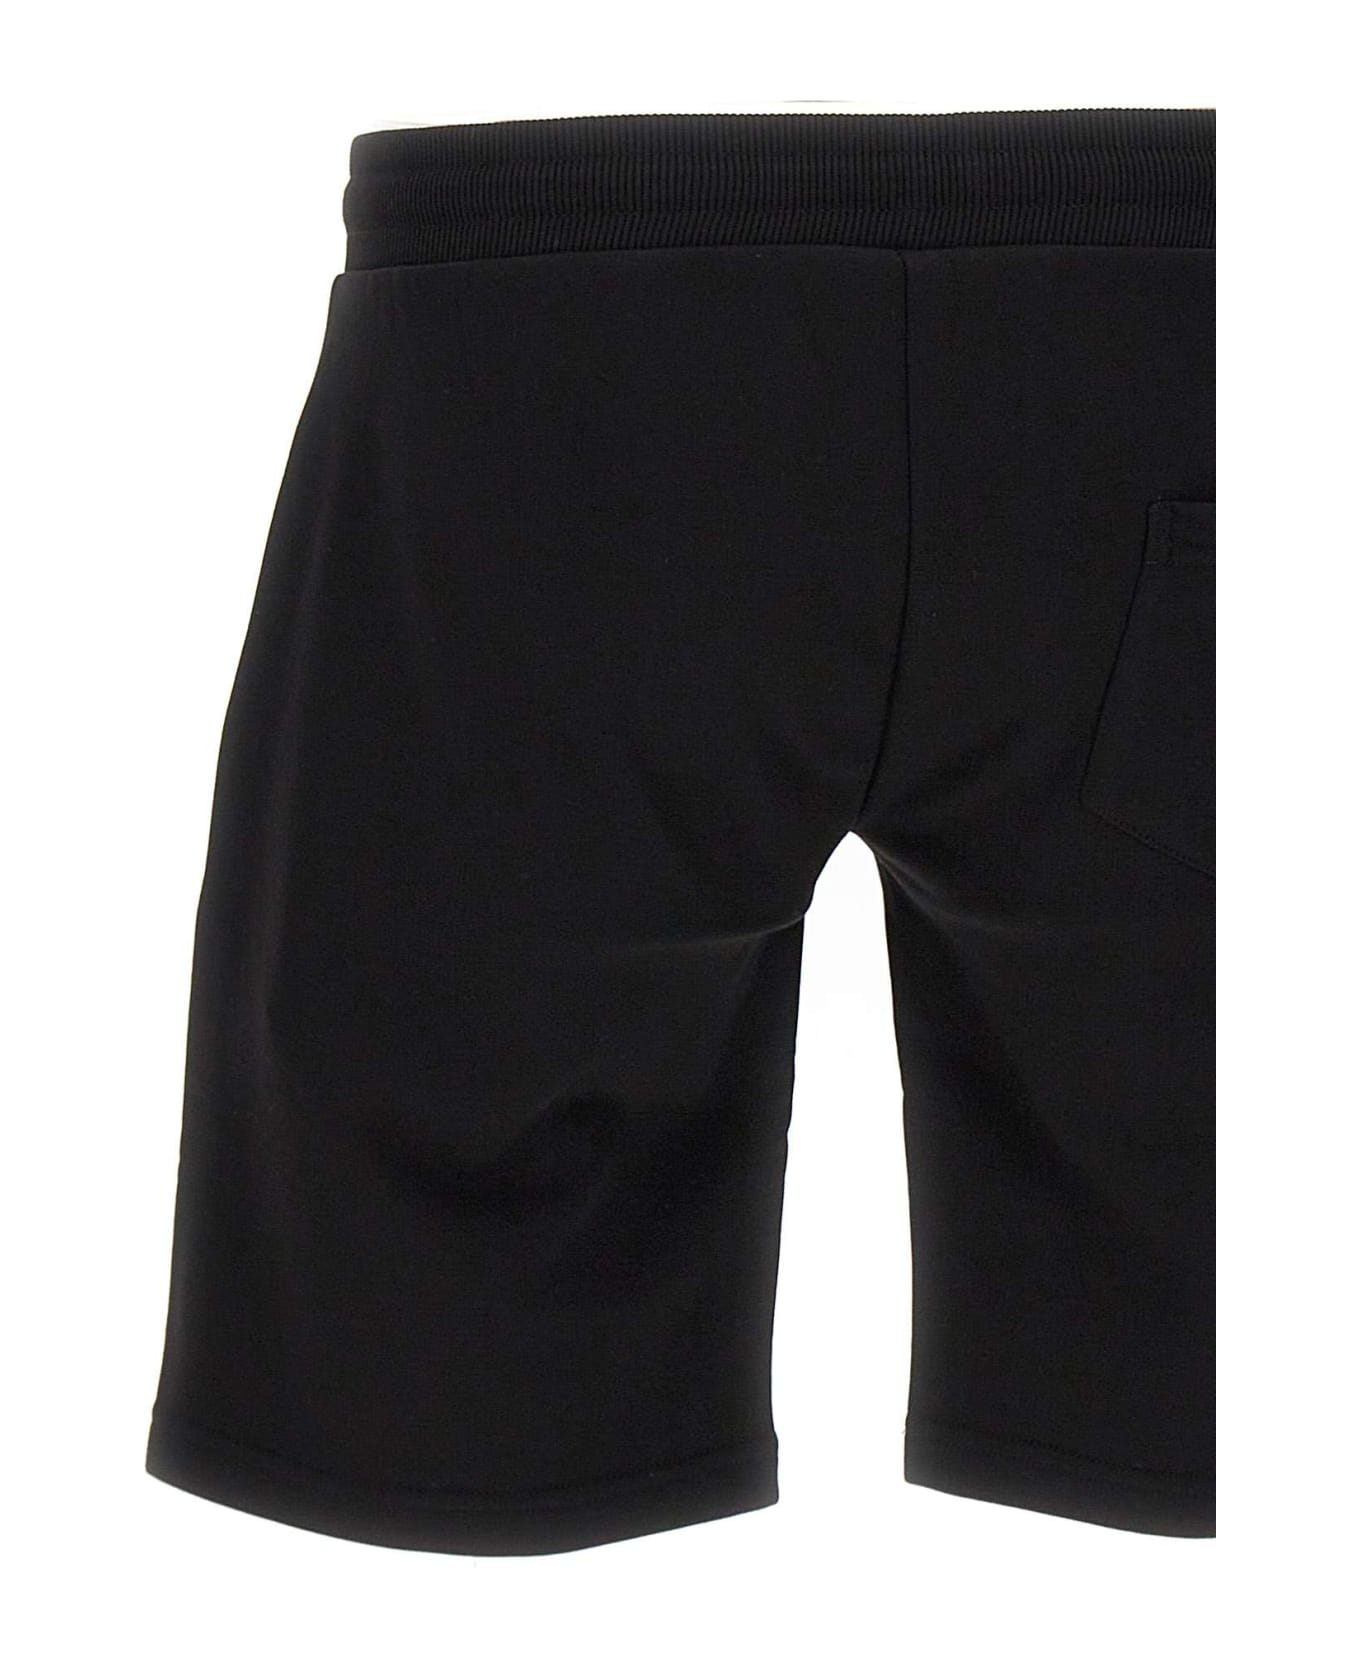 Colmar 'connective' Cotton Shorts - Black